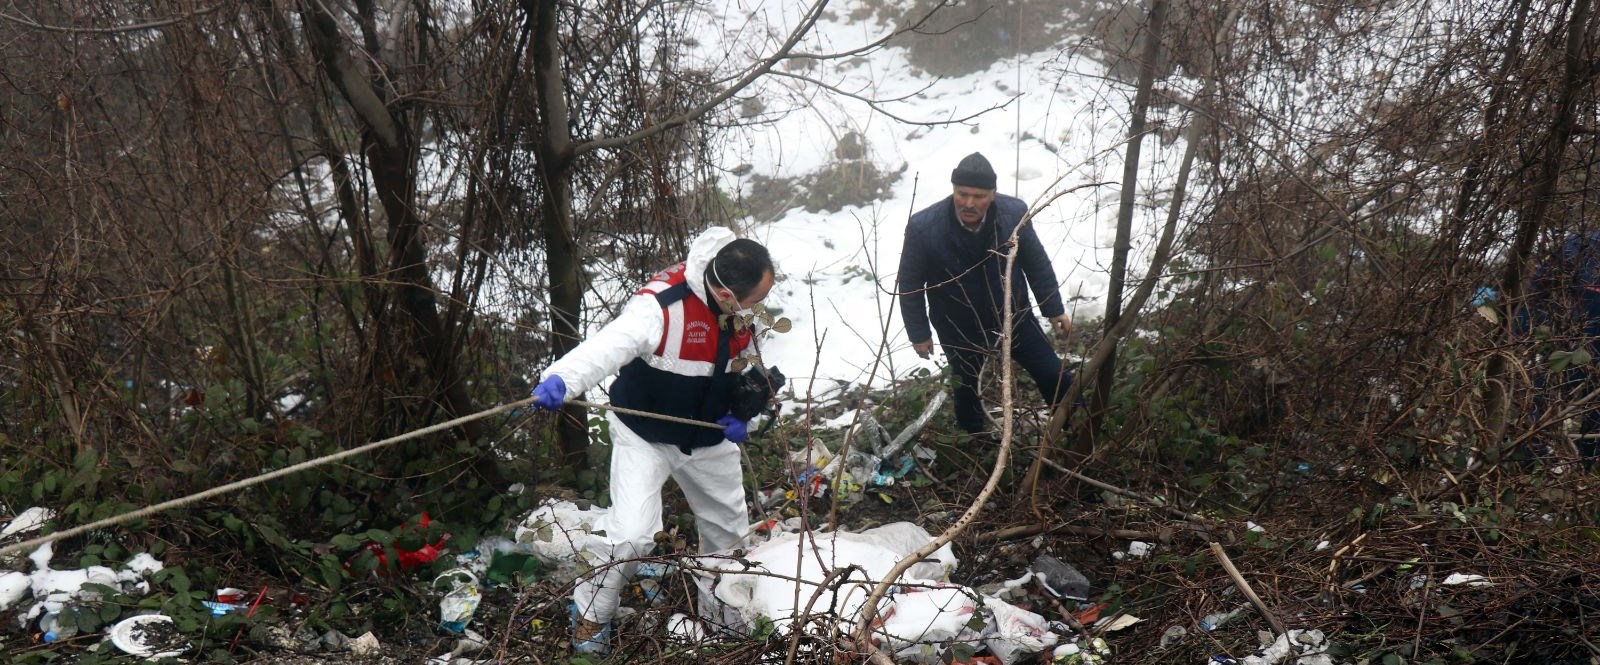 Bolu Dağı’nda bavul içerisinde ceset bulundu